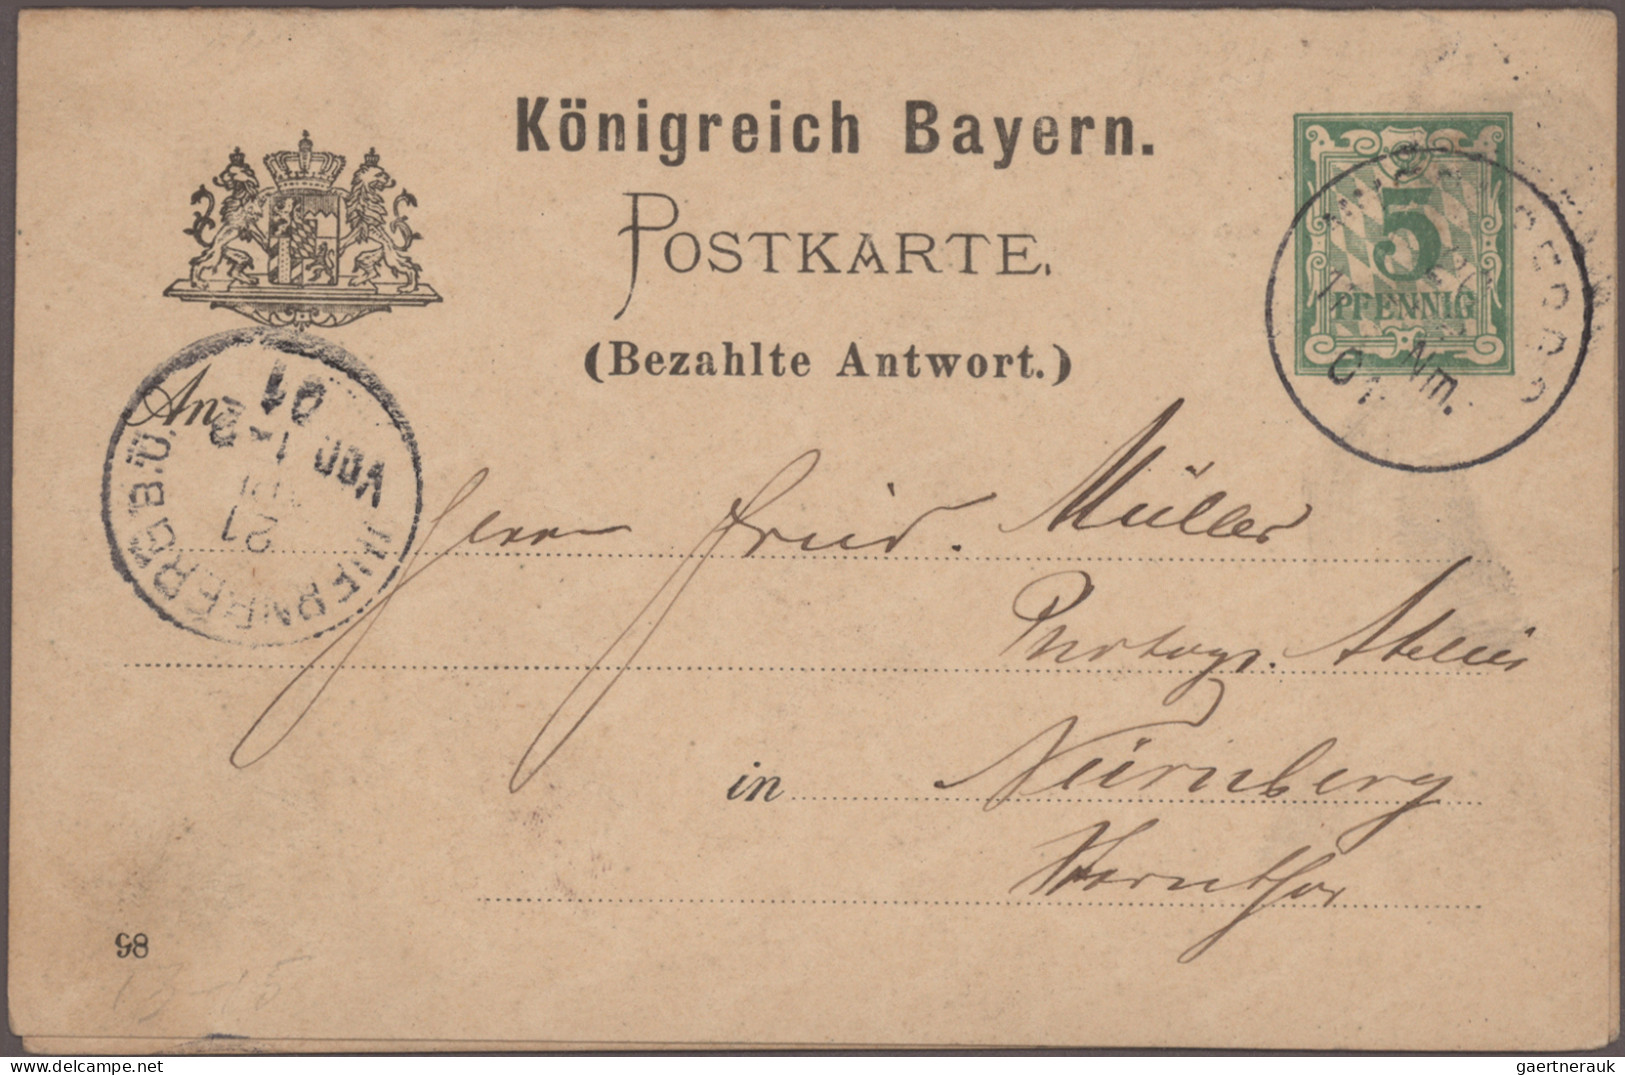 Bayern - Ganzsachen: 1873/1920, Partie von ca. 370 gebrauchten und ungebrauchten